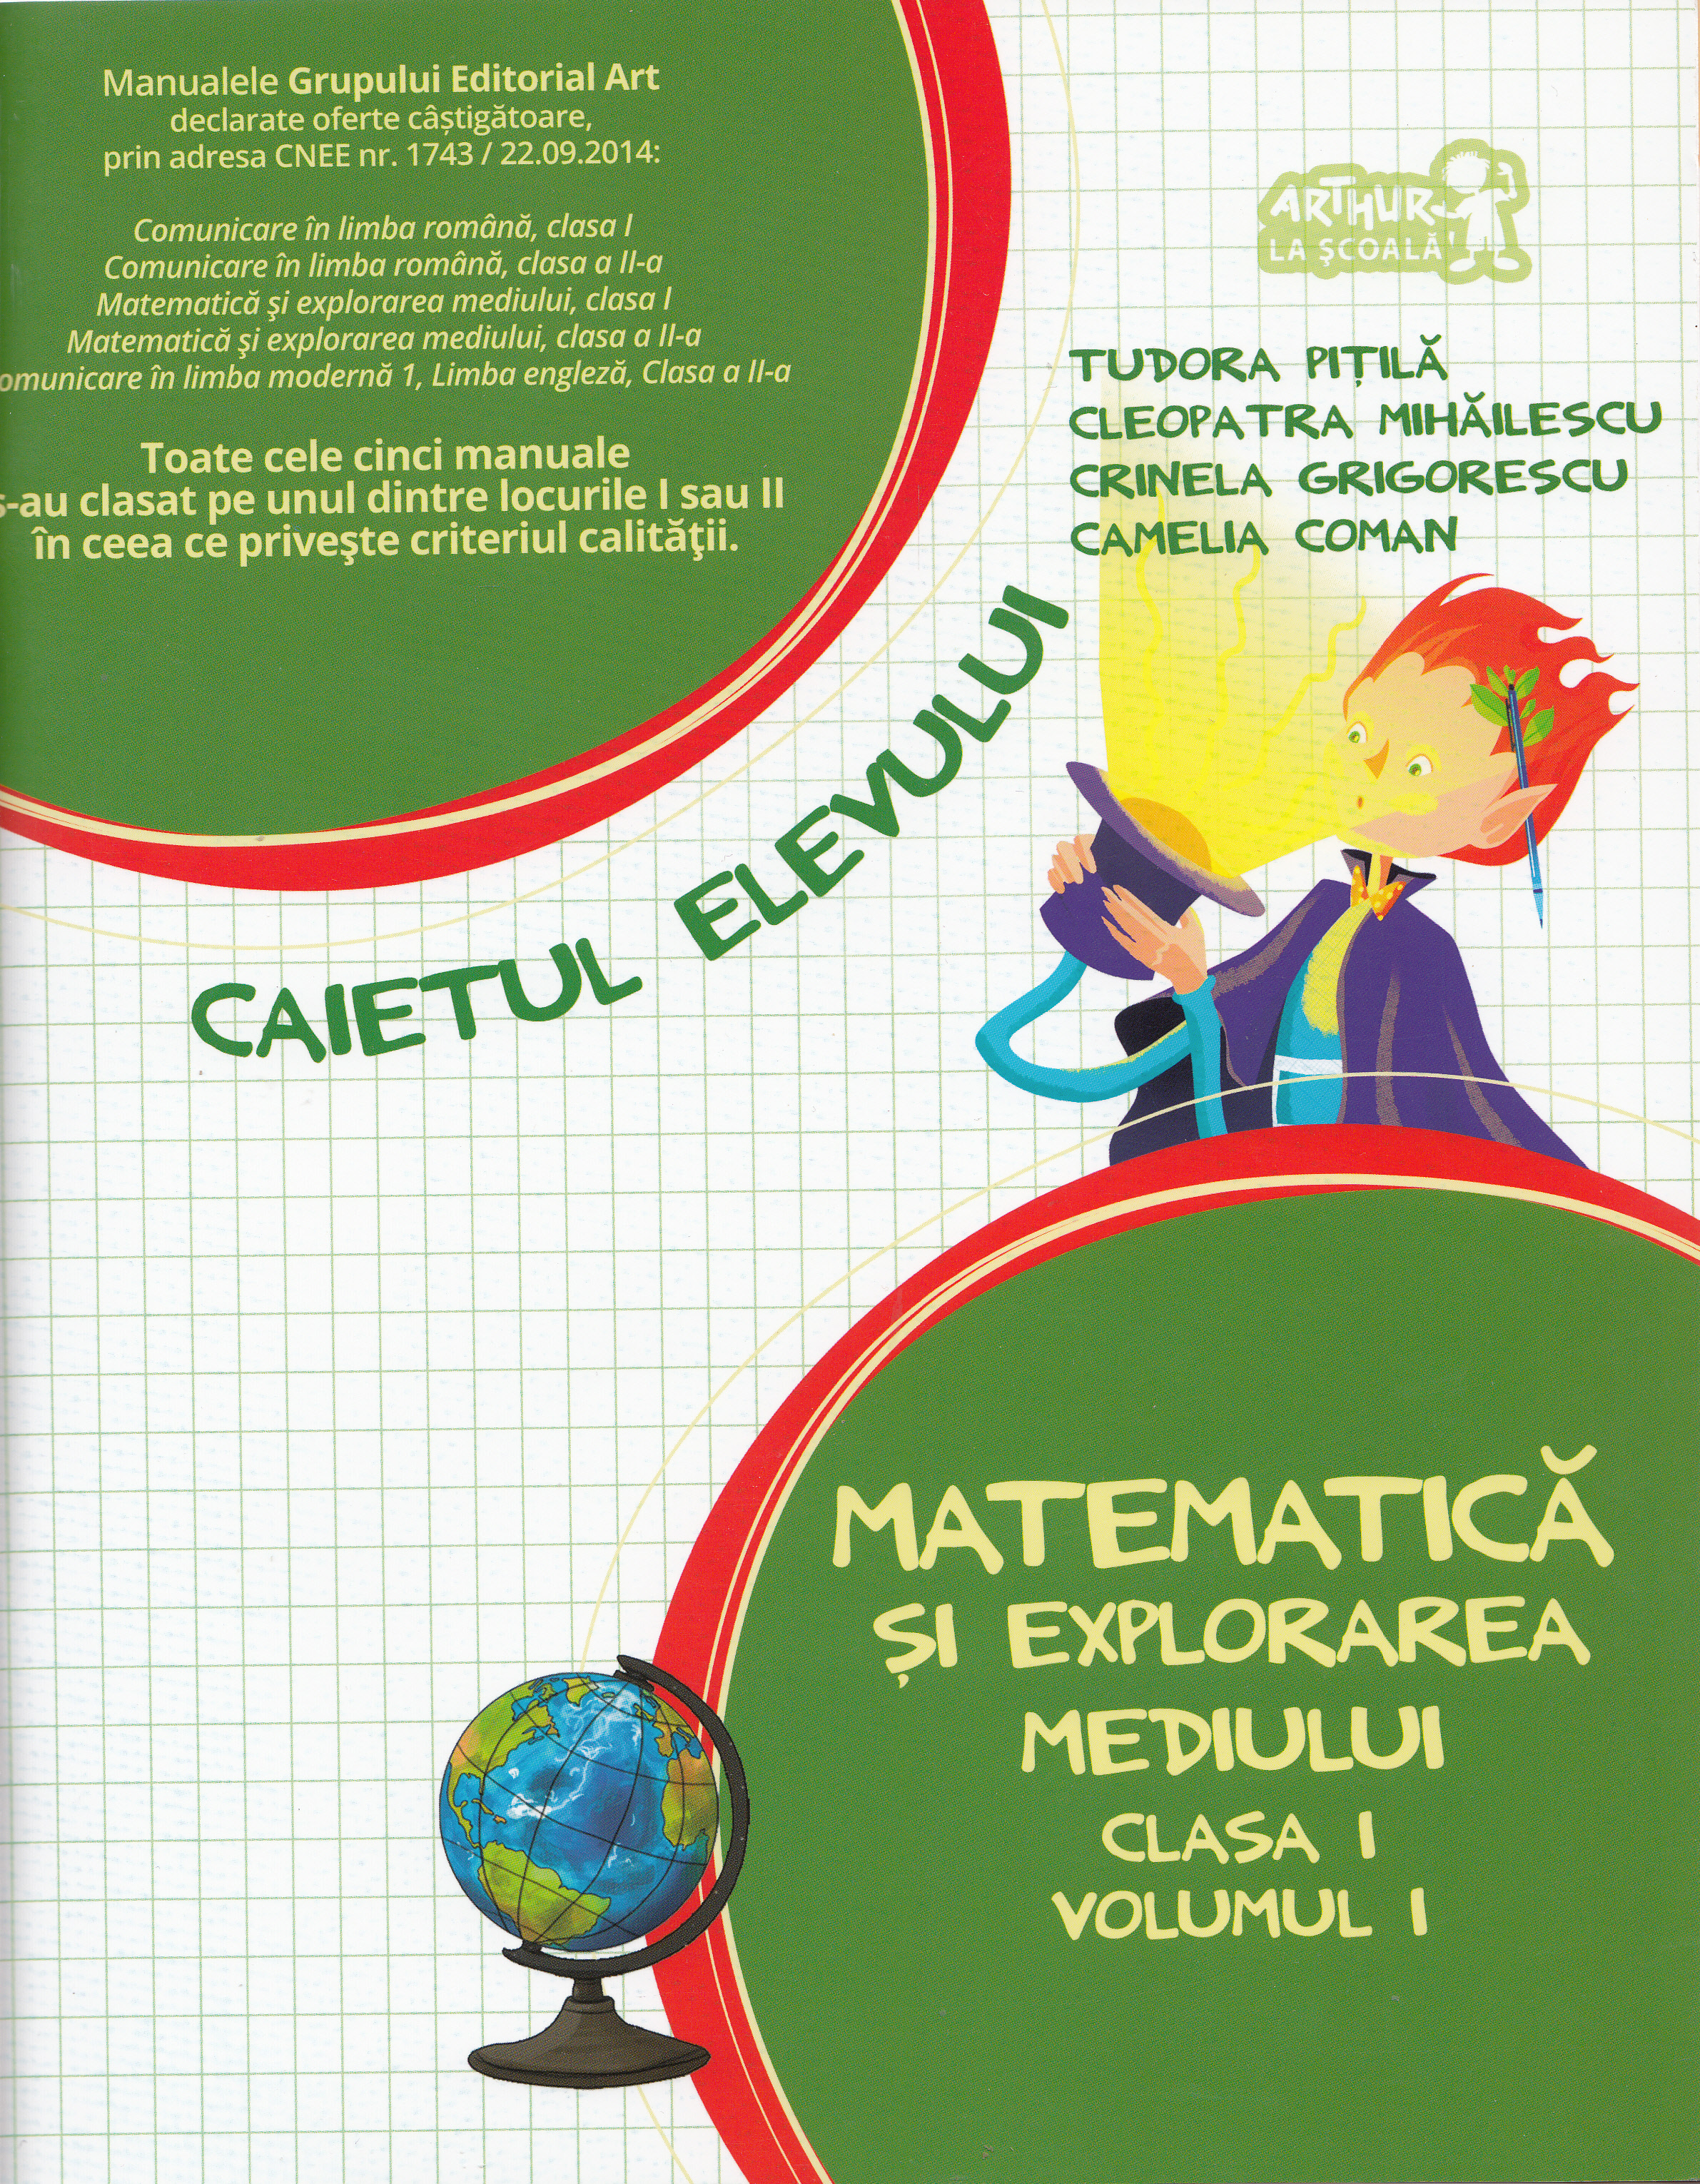 Matematica si explorarea mediului - Clasa I. Volumul I - Caietul elevului - Tudora Pitila, Cleopatra Mihailescu